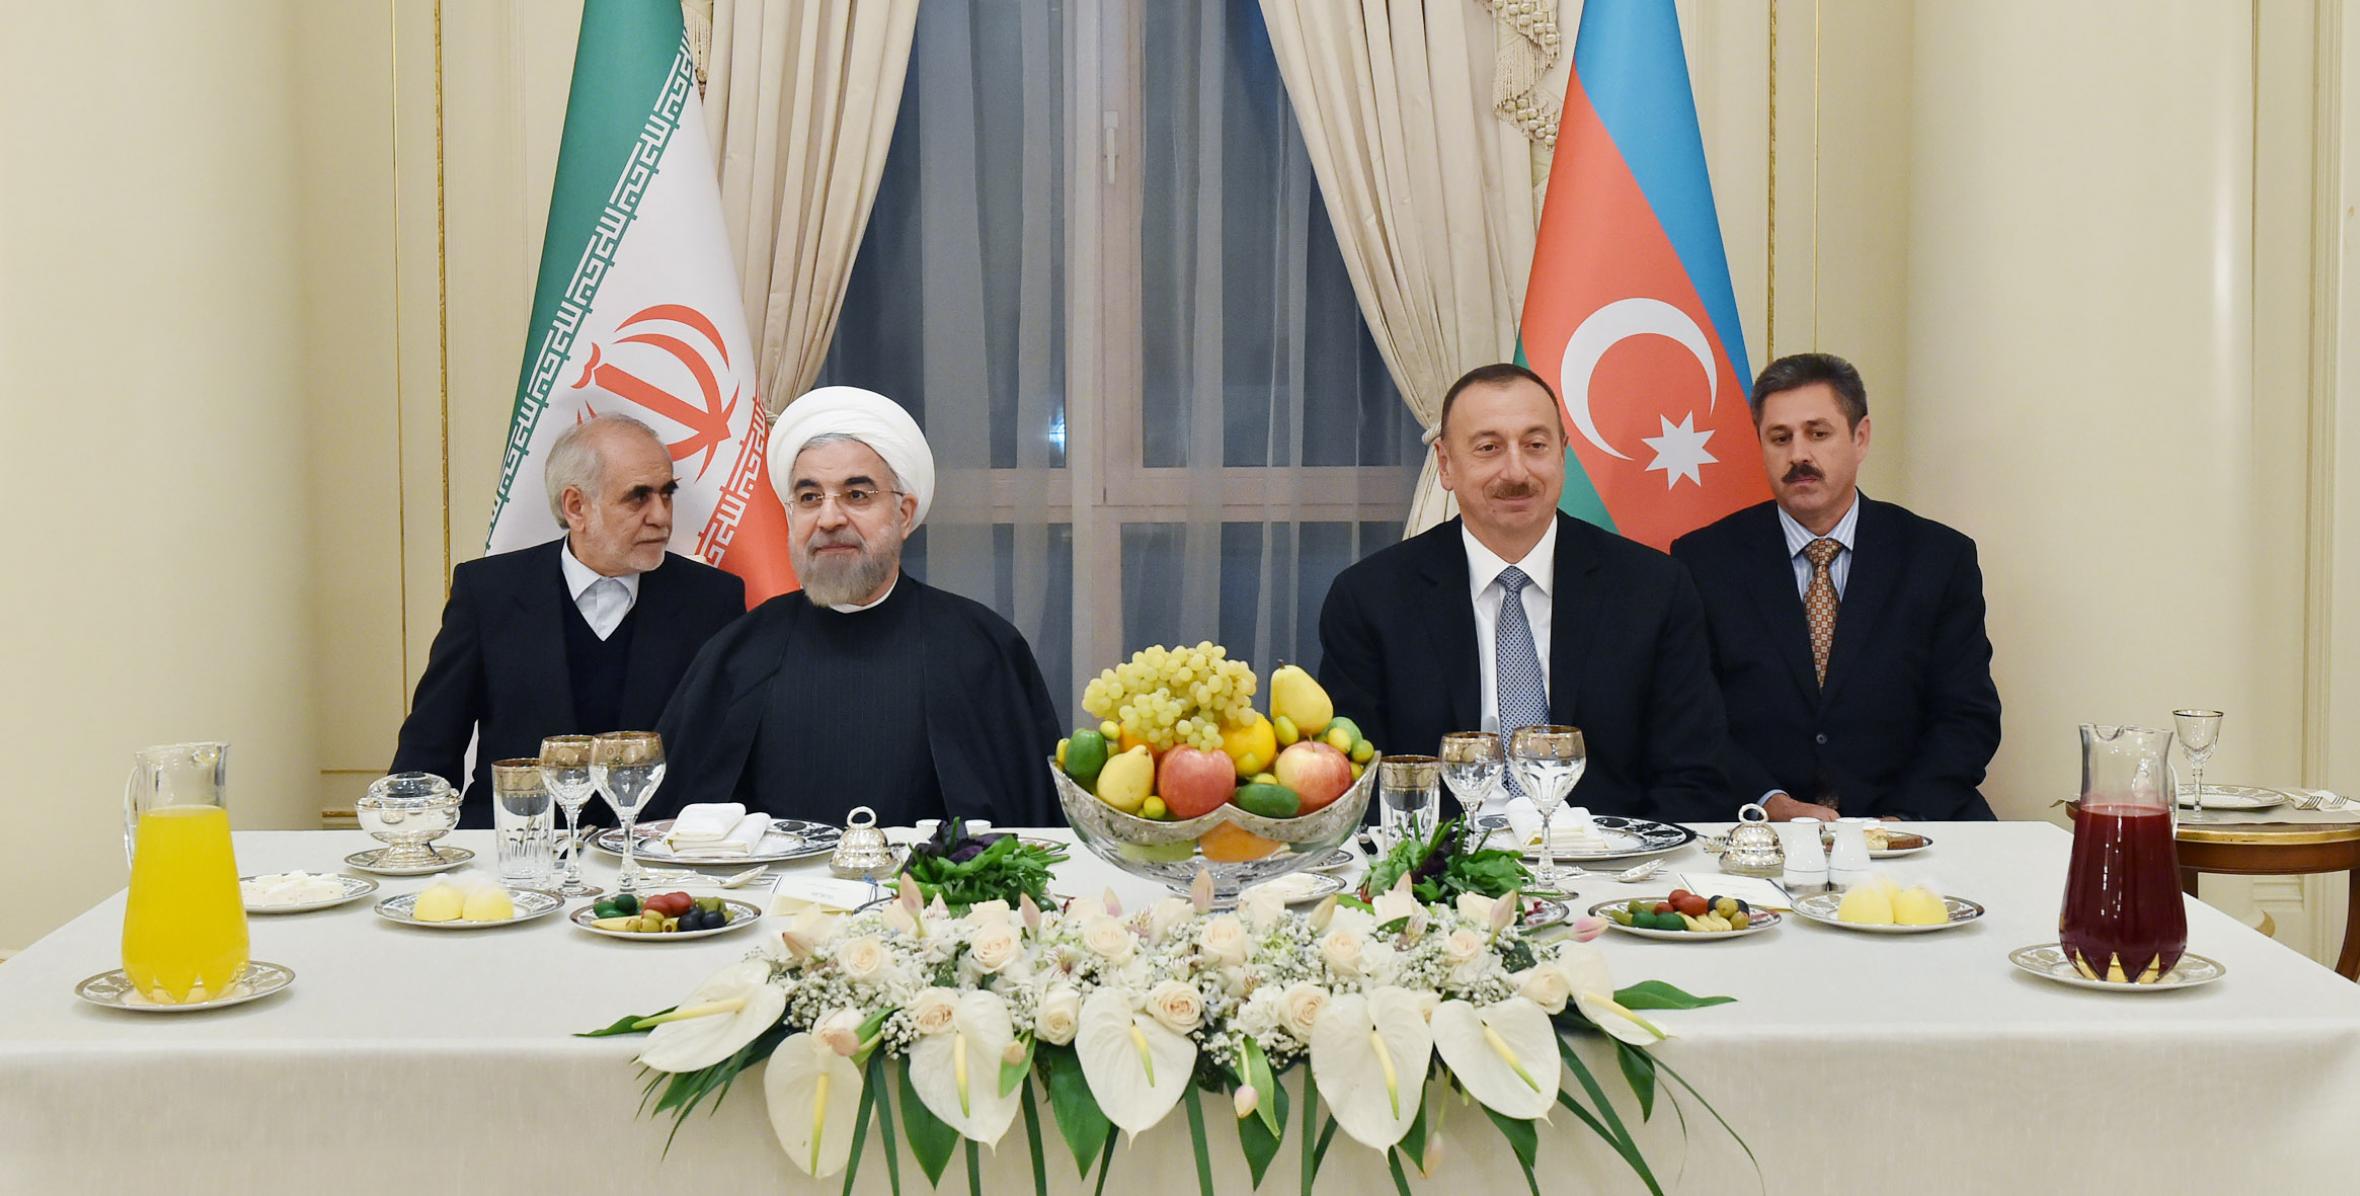 От имени Ильхама Алиева был устроен прием в честь Президента Исламской Республики Иран Хасана Роухани